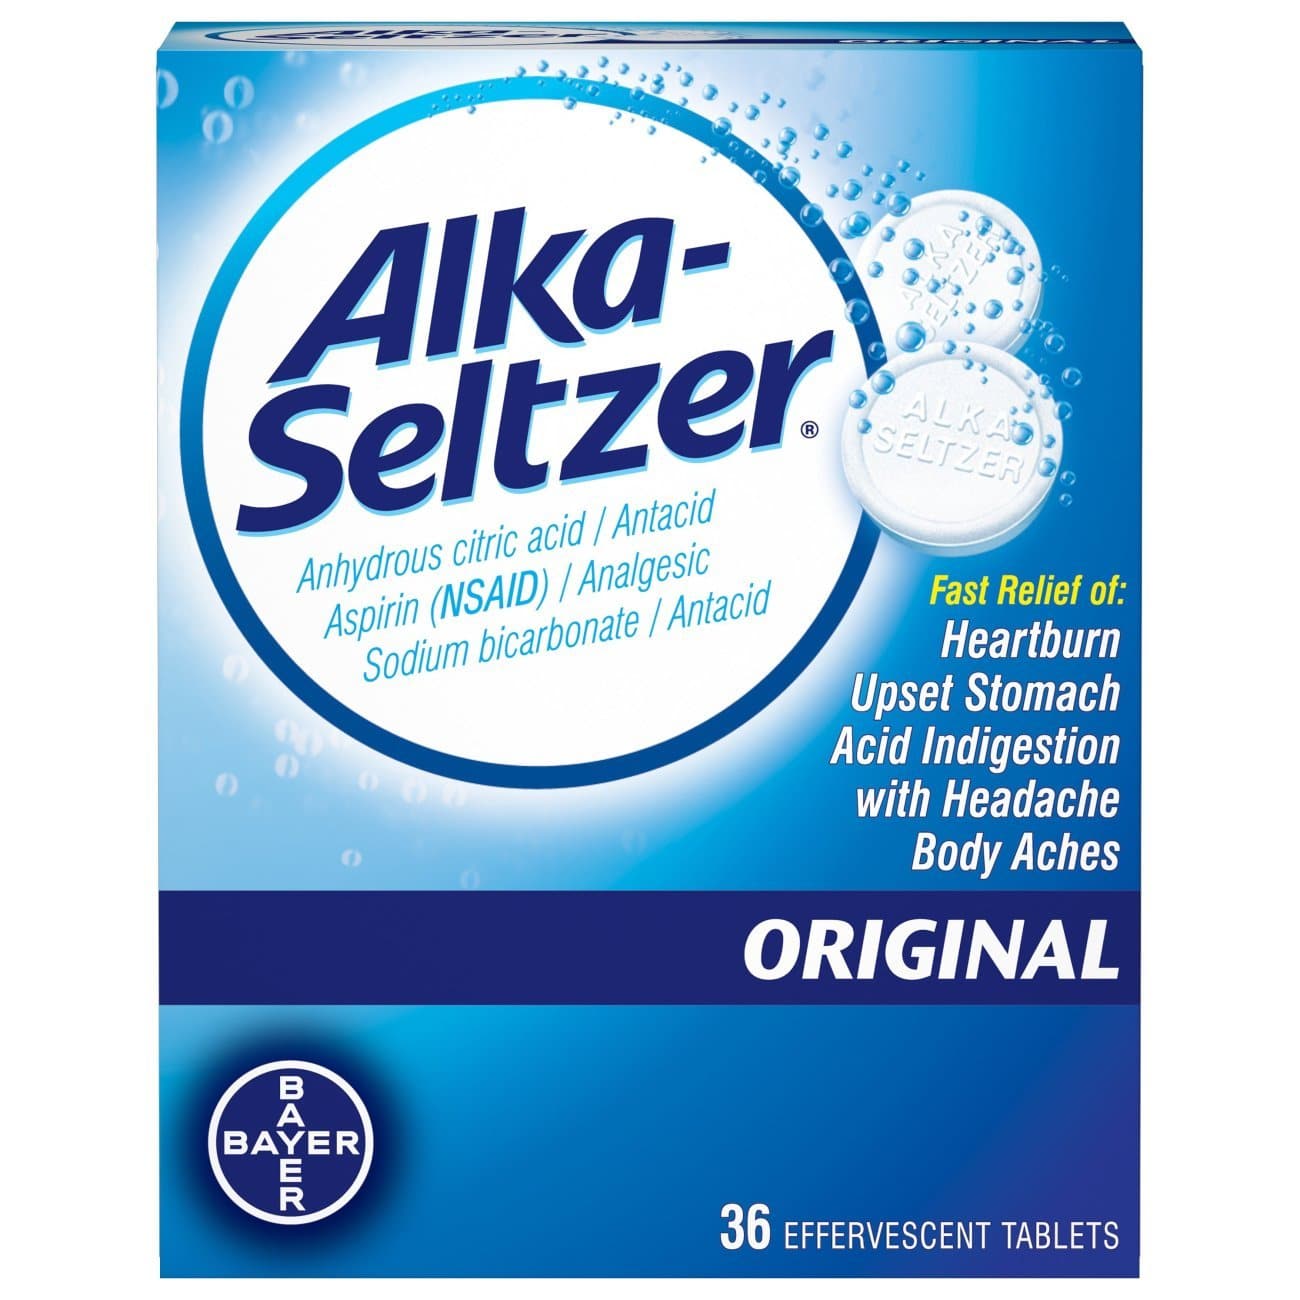 Does Alka Seltzer Help Upset Stomach